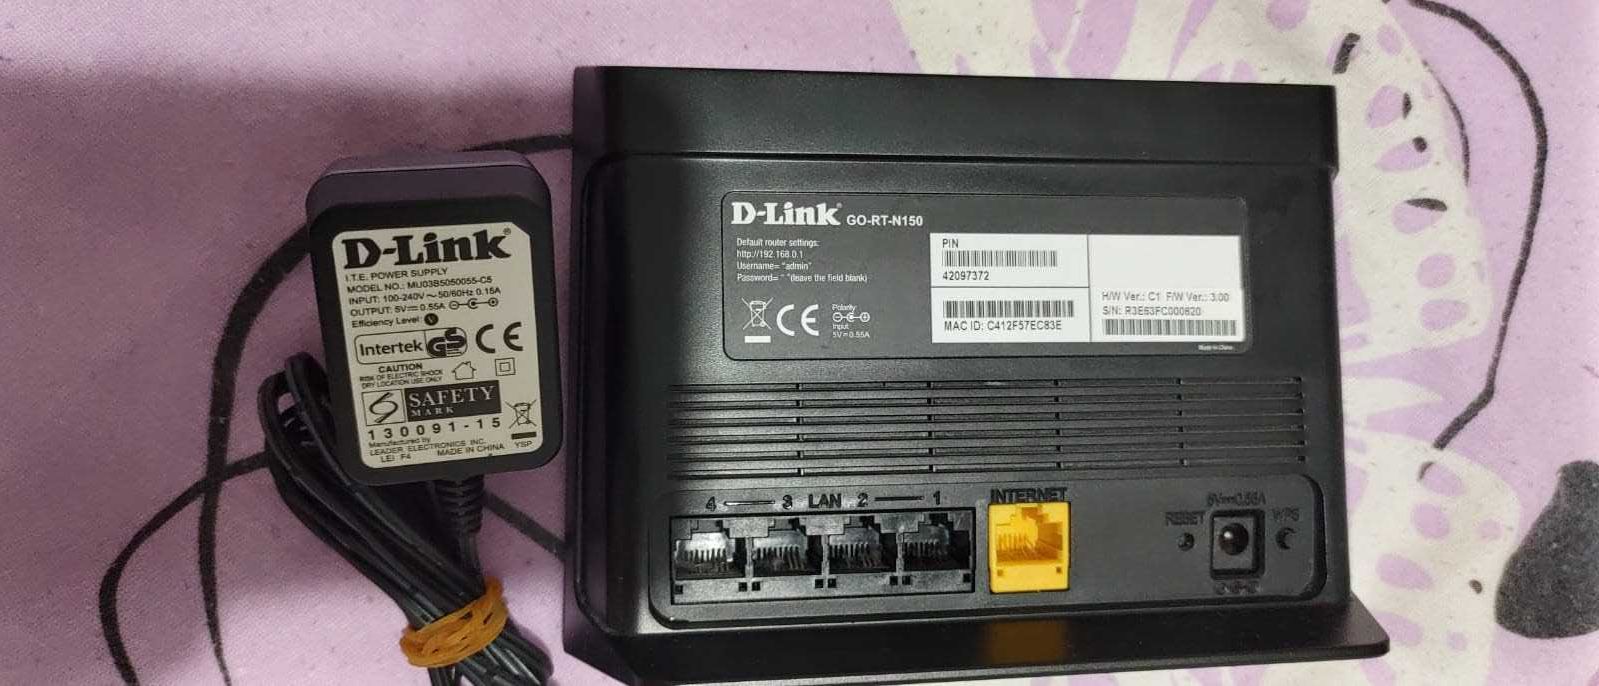 Router D-link în stare bună de funcționare